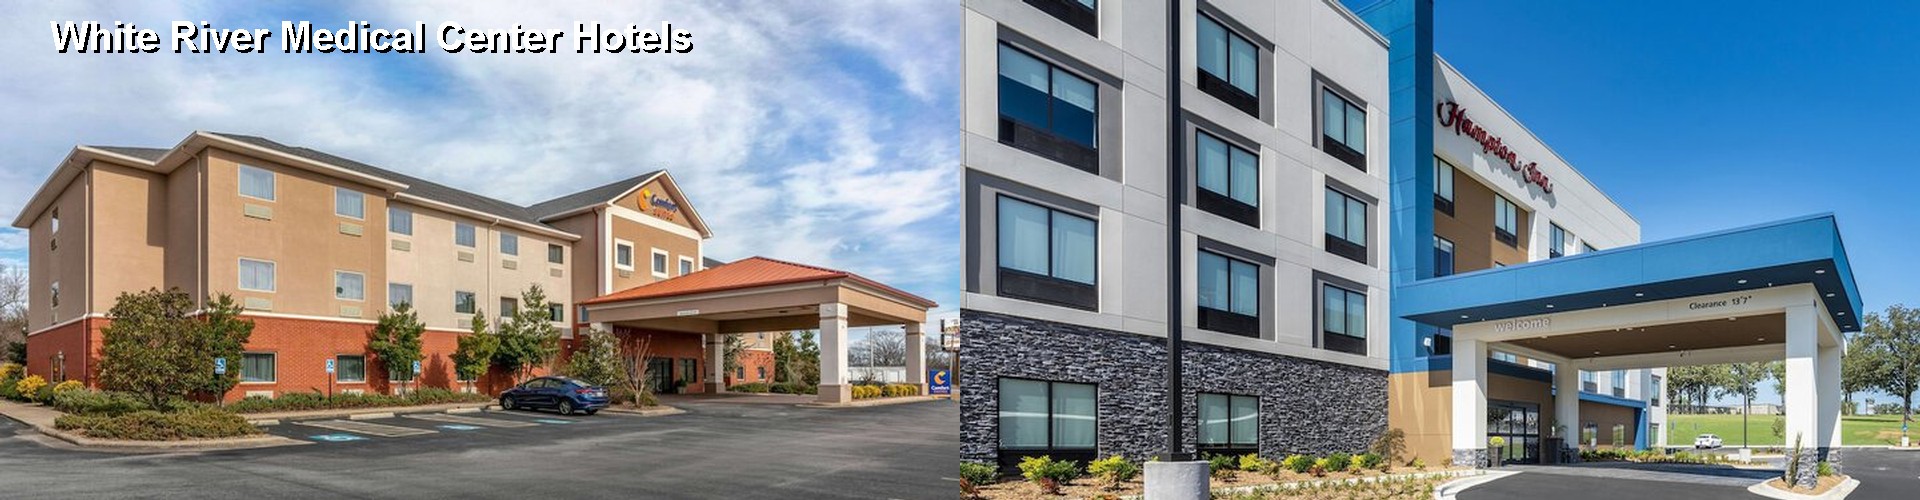 4 Best Hotels near White River Medical Center